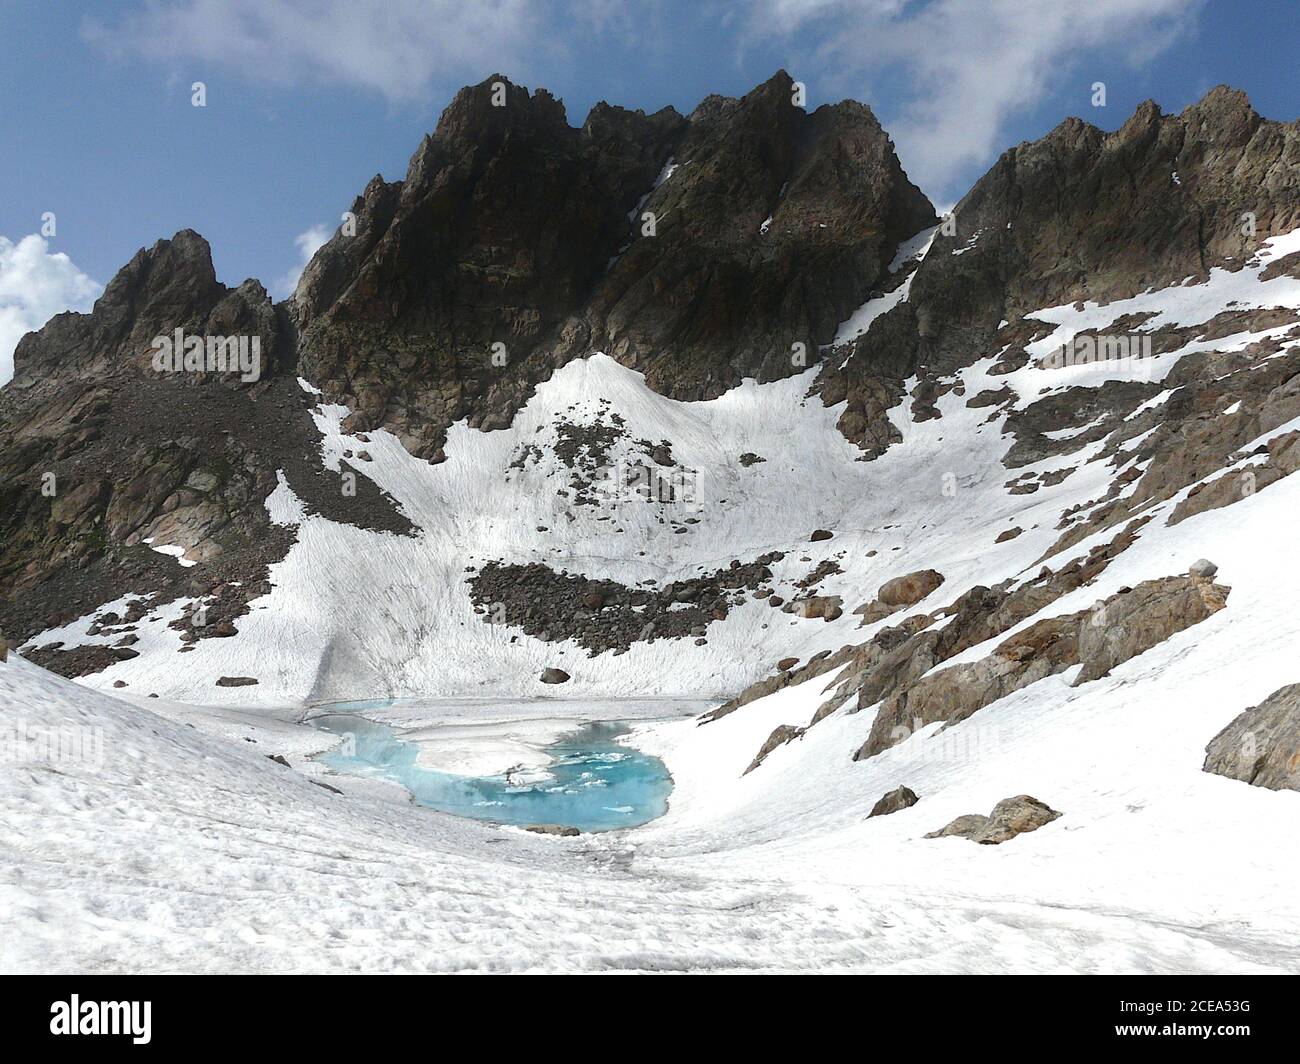 Scenic view of  'Cima di Nasta' , Alpi Marittime, Italy Stock Photo